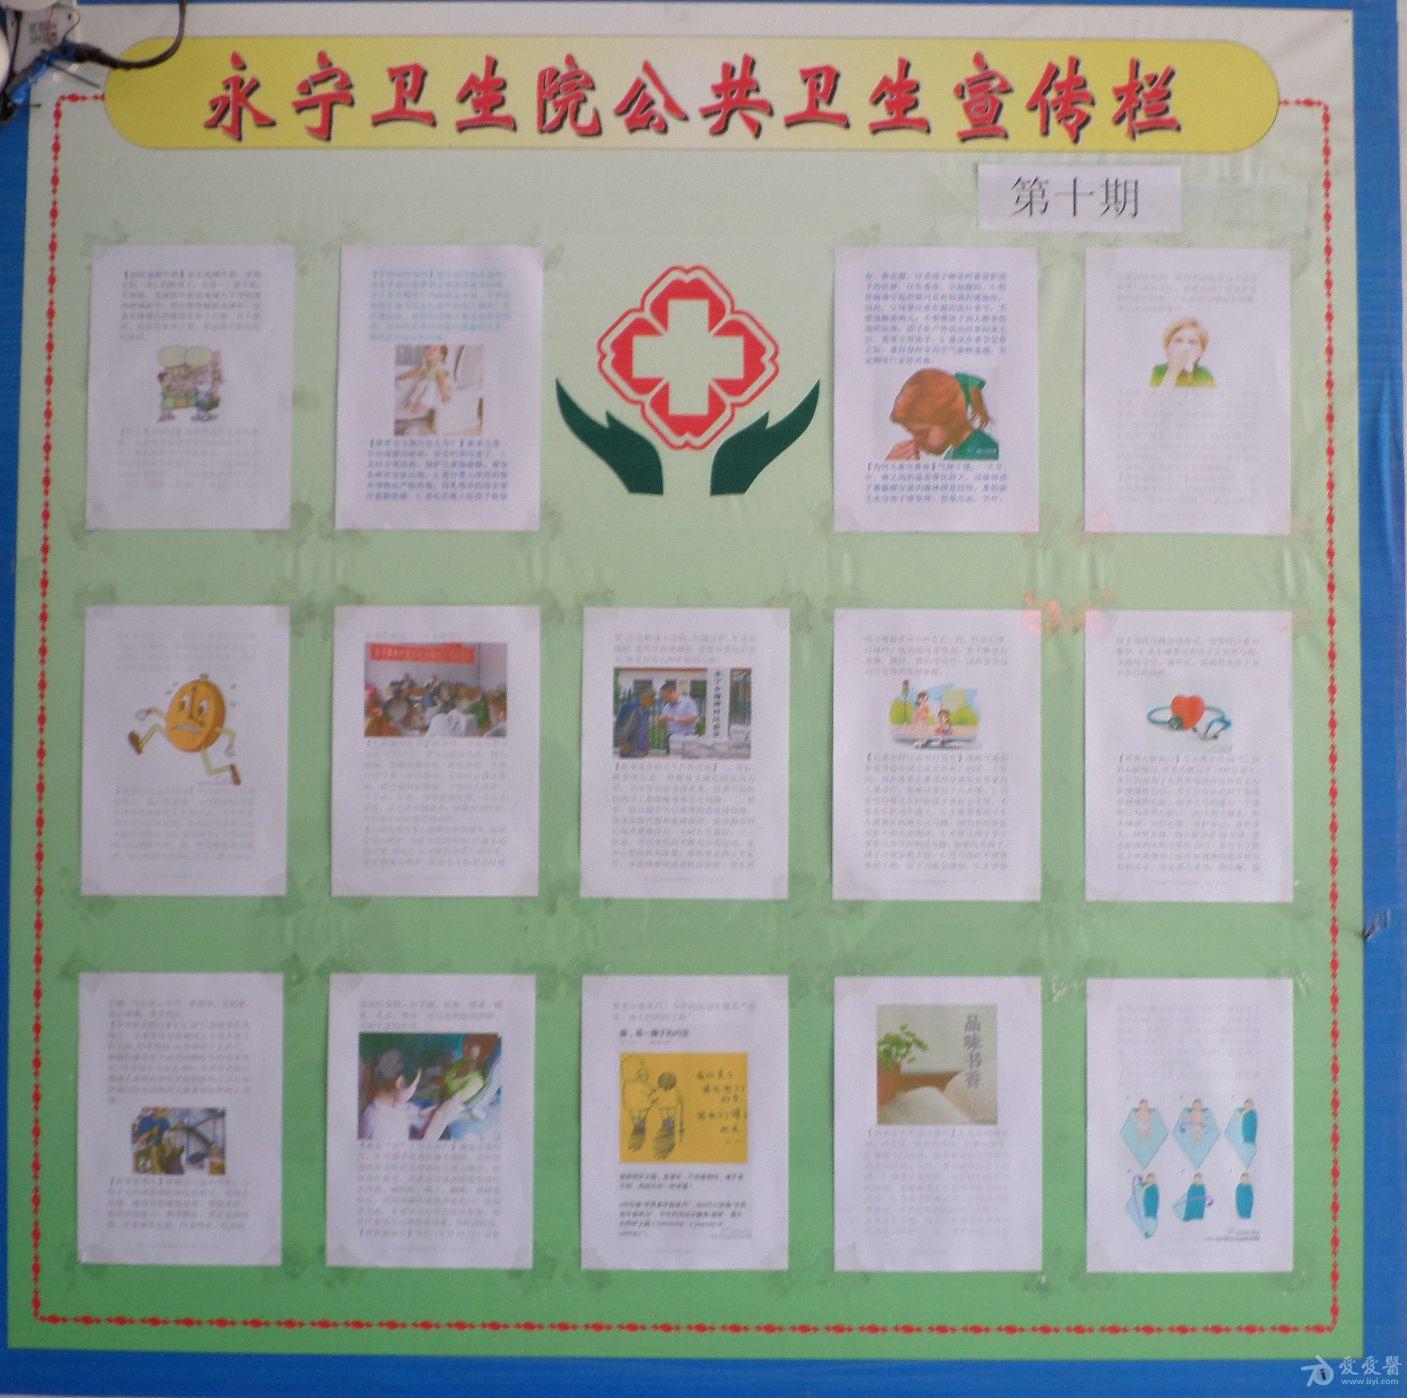 庄浪县永宁乡卫生院2013年10月健康教育宣传栏图片